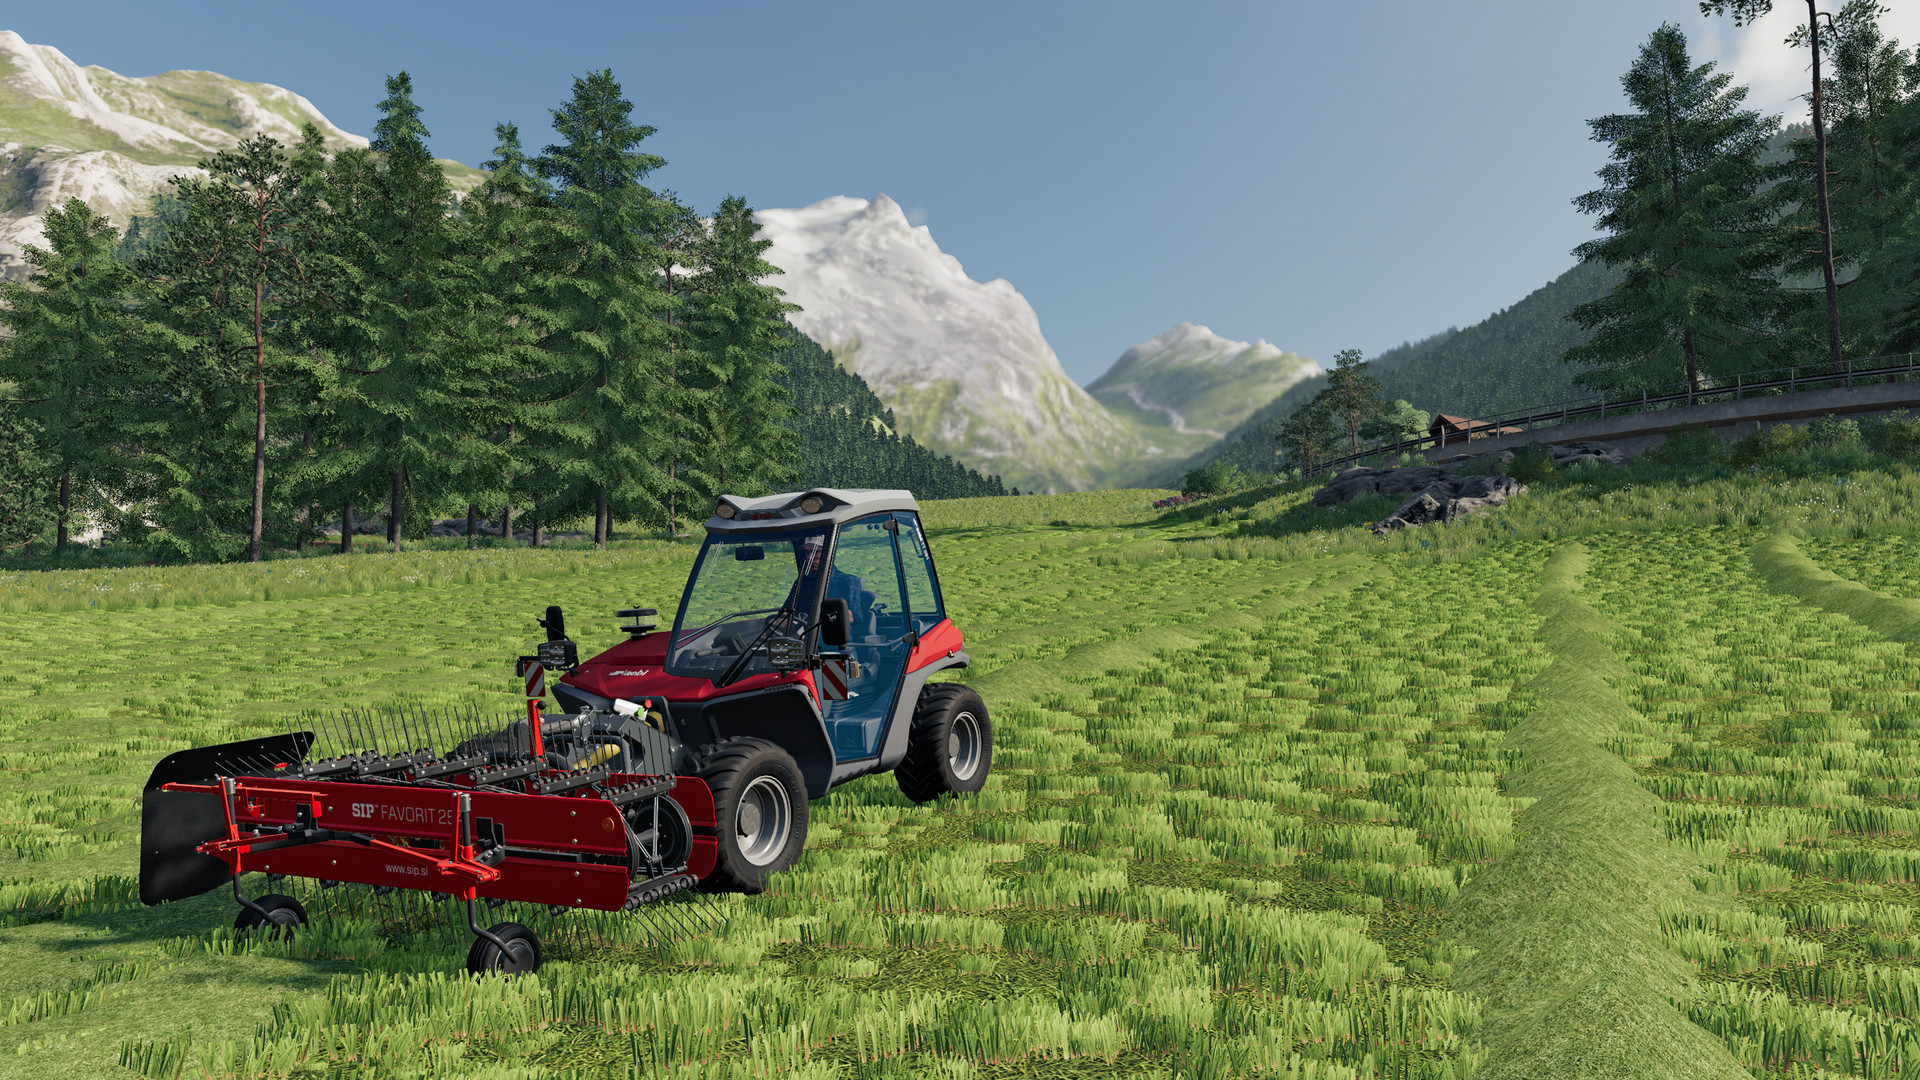 上山种地！《模拟农场19》推出阿尔卑斯山农耕拓展包